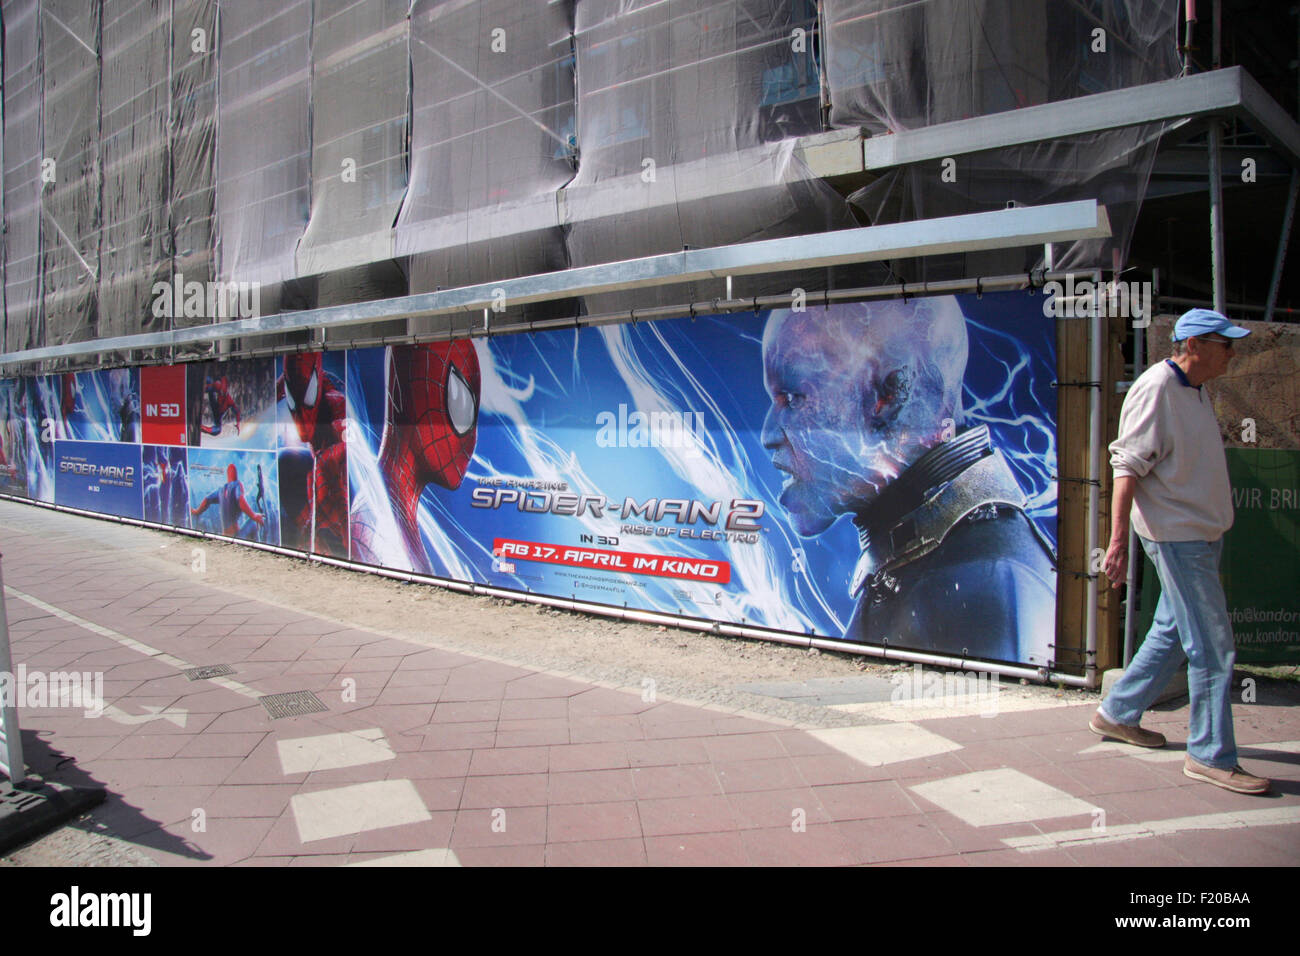 Werbeplakate fuer den Spielfilm 'Spiderman', Berlin. Stock Photo